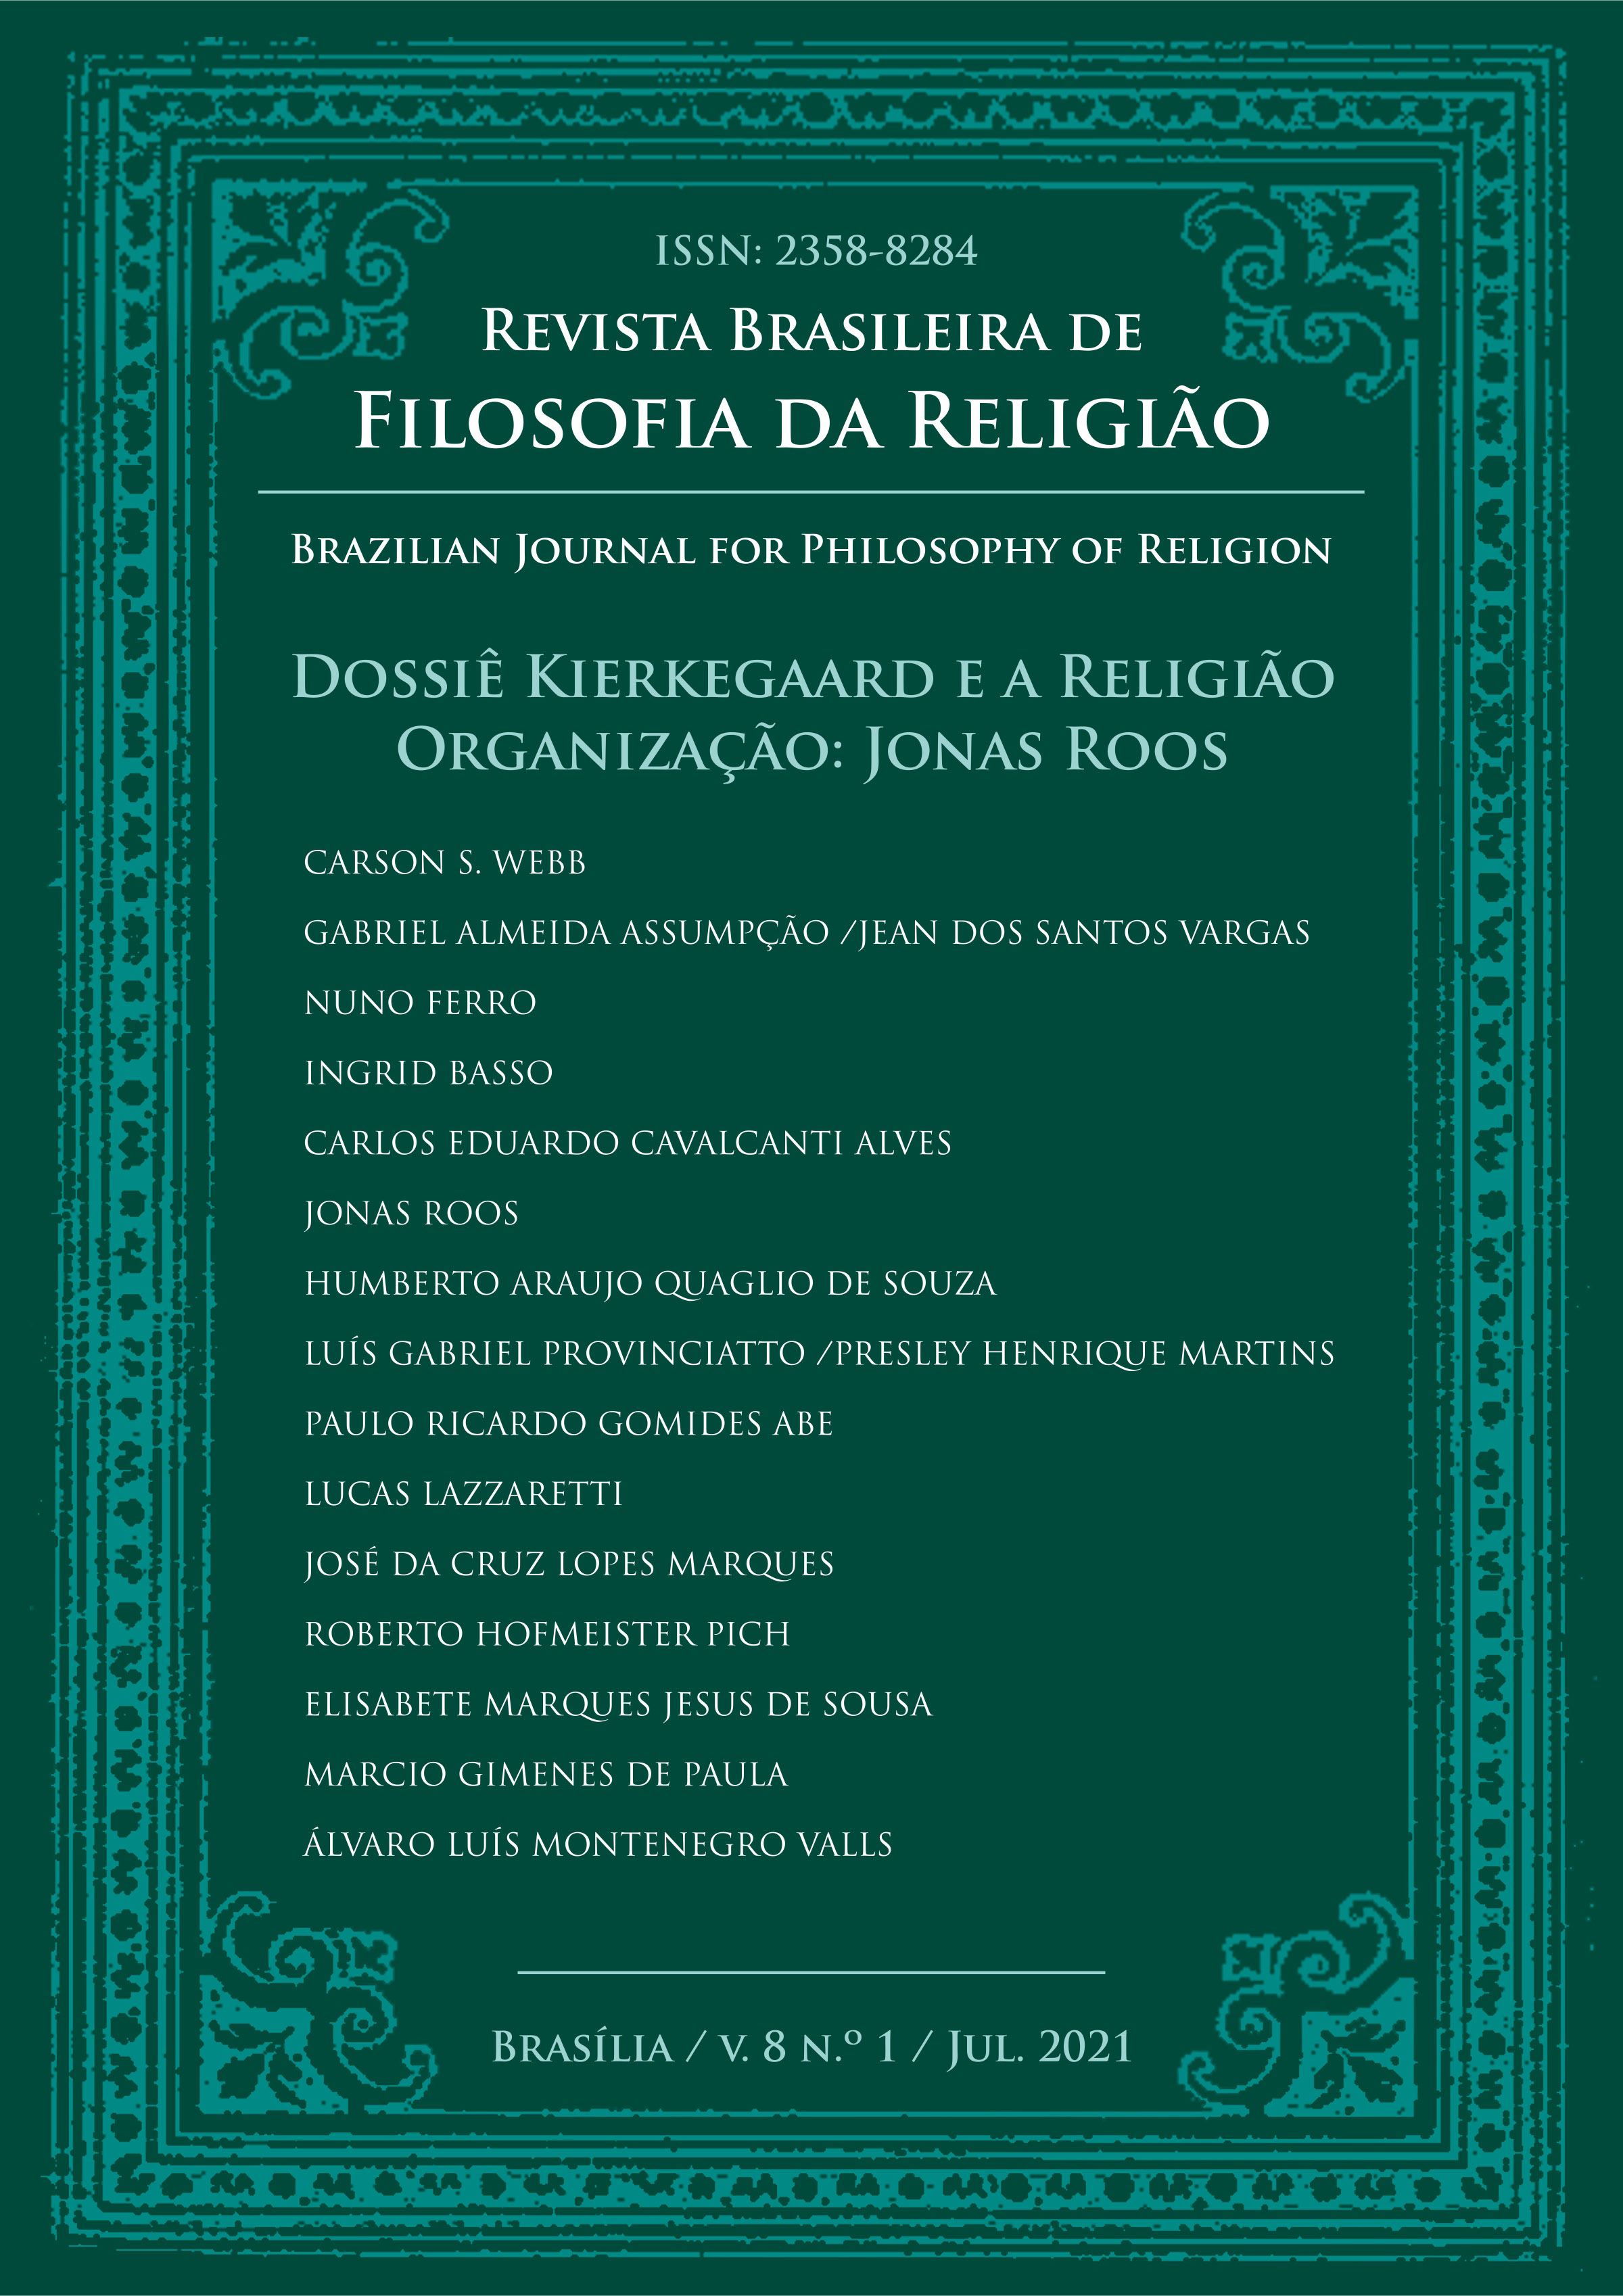 					Visualizar v. 8 n. 1 (2021): Dossiê Kierkegaard e a Filosofia da Religião
				